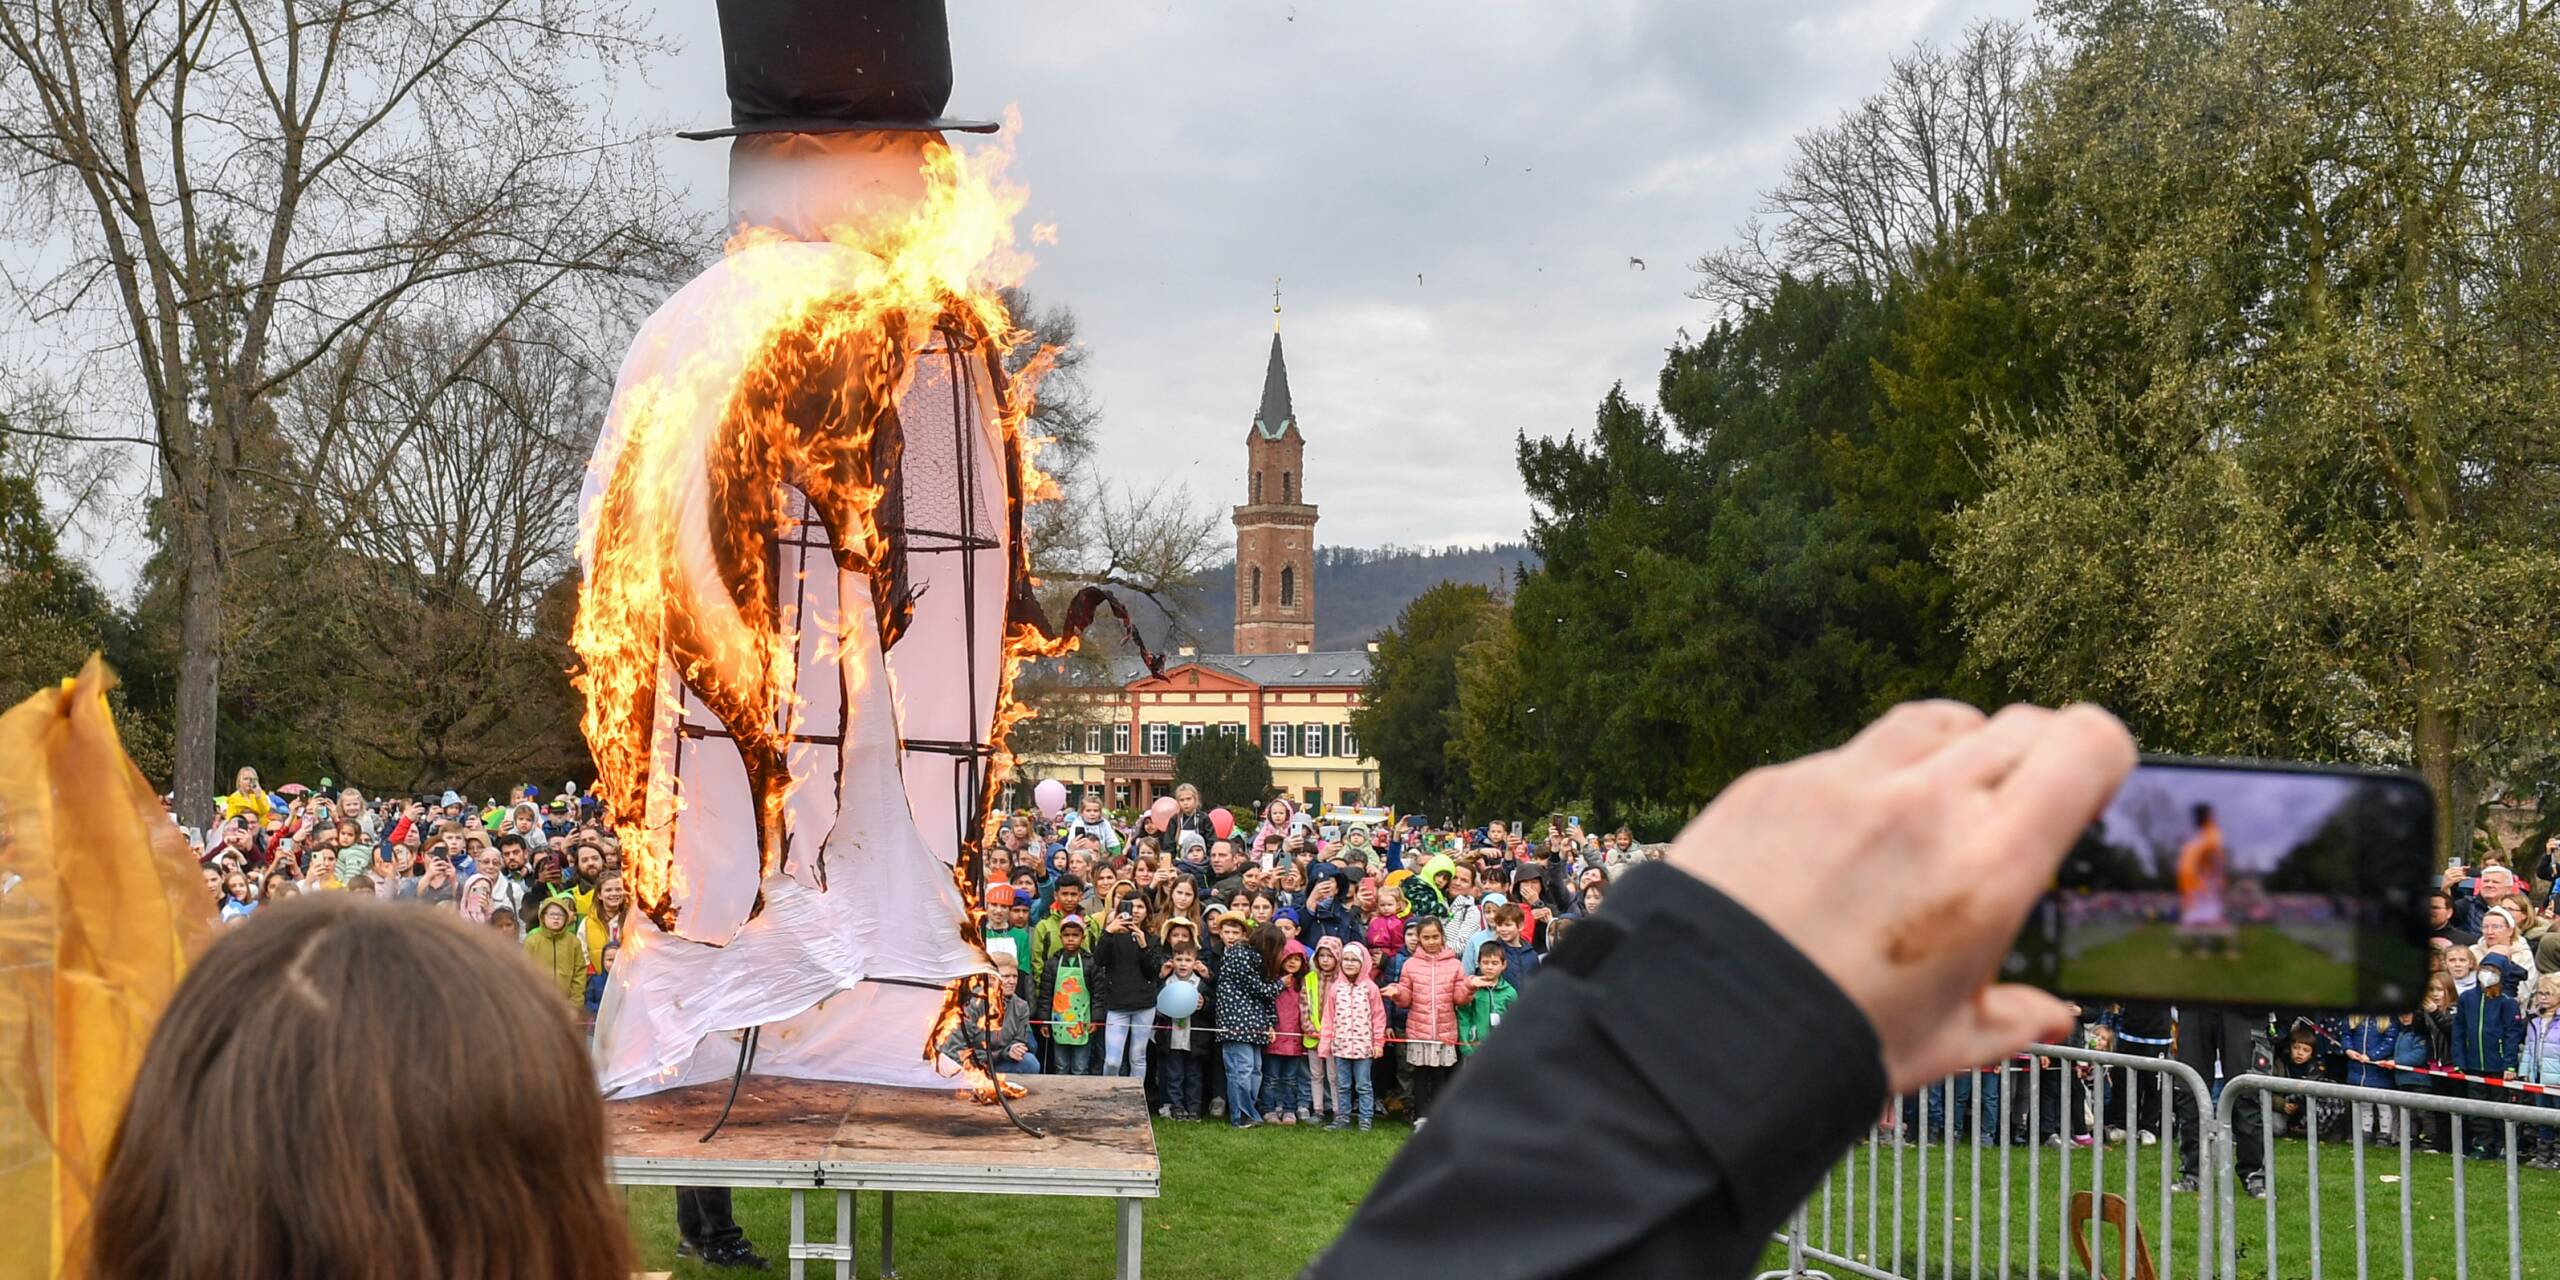 Na endlich: Der Schneemann geht im Schlosspark Weinheim in Flammen auf. Das wird natürlich mit dem Handy gefilmt und fotografiert.